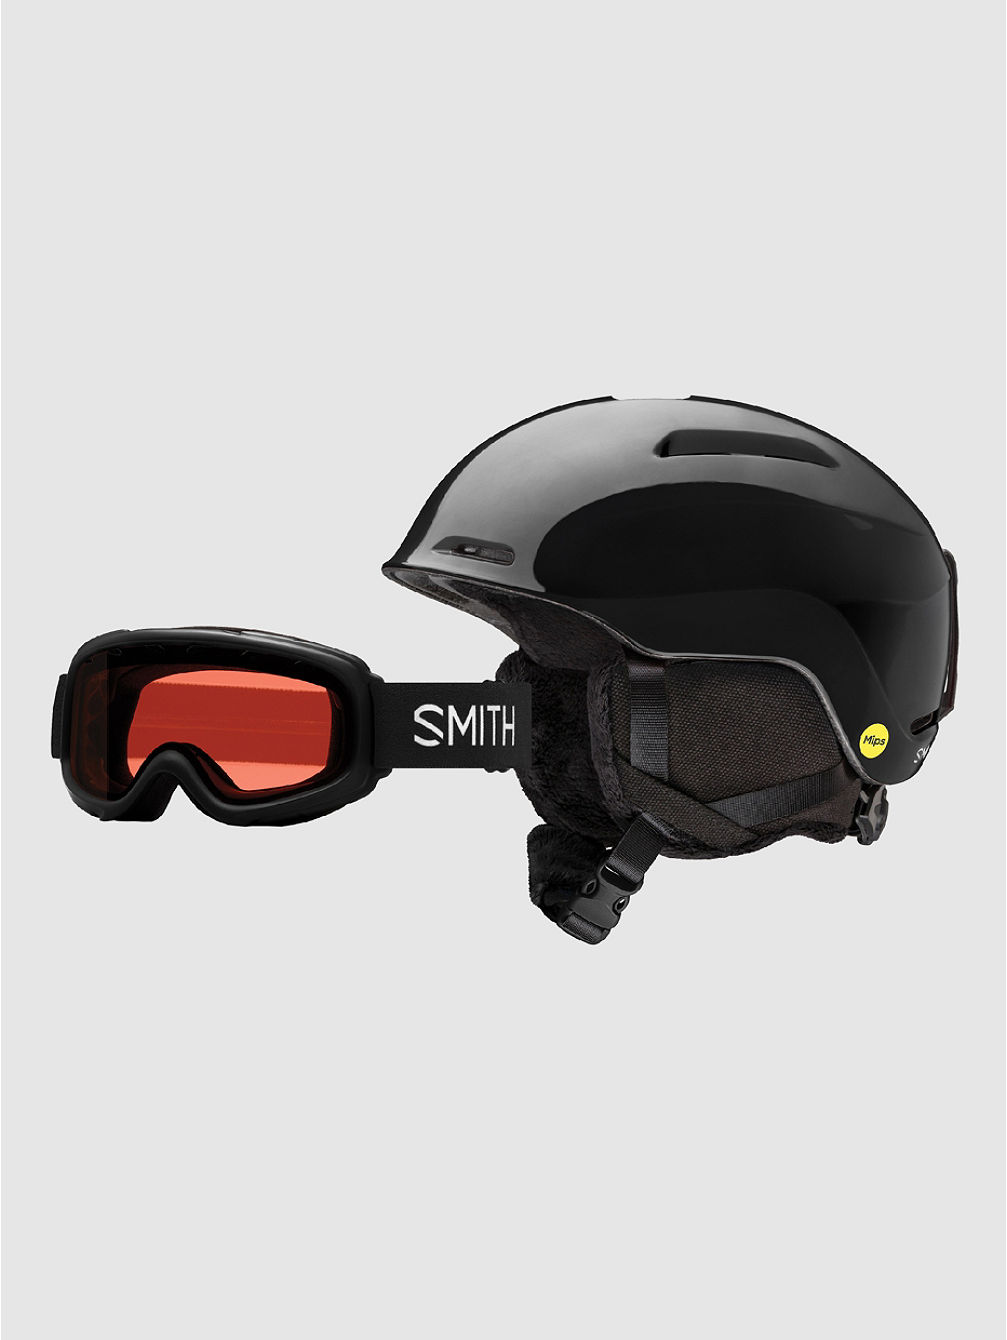 Glide MIPS/Rascal Helmet